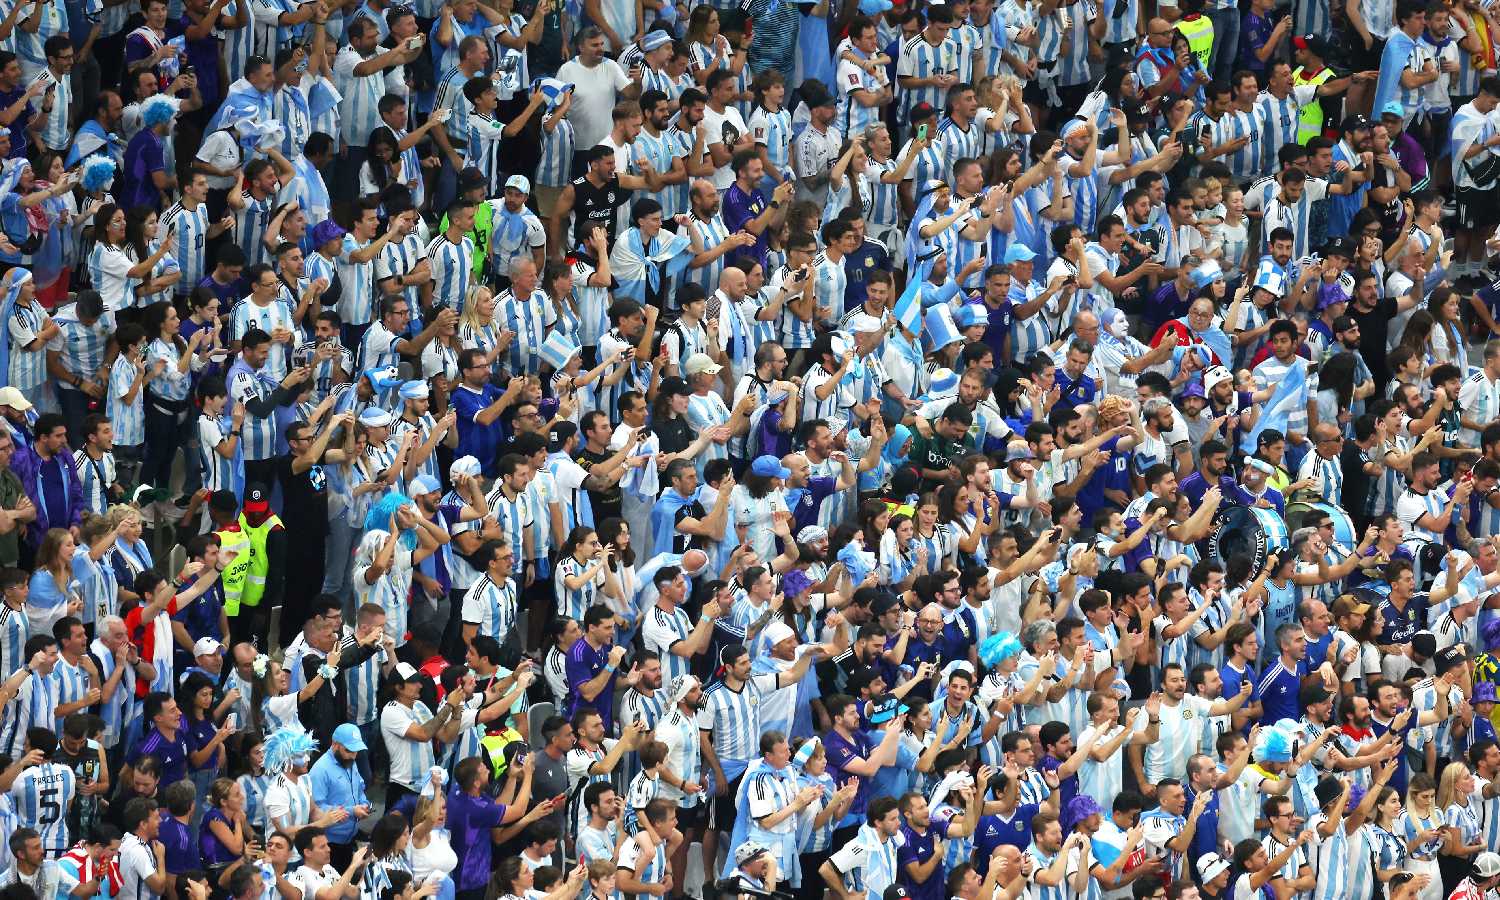 جماهير المنتخب الأرجنتيني في استاد "لوسيل" خلال نهائي كأس العالم لكرة القدم في مباراة بين الأرجنتين وفرنسا- 18 من كانون الأول 2022 (FiFa/ تويتر)